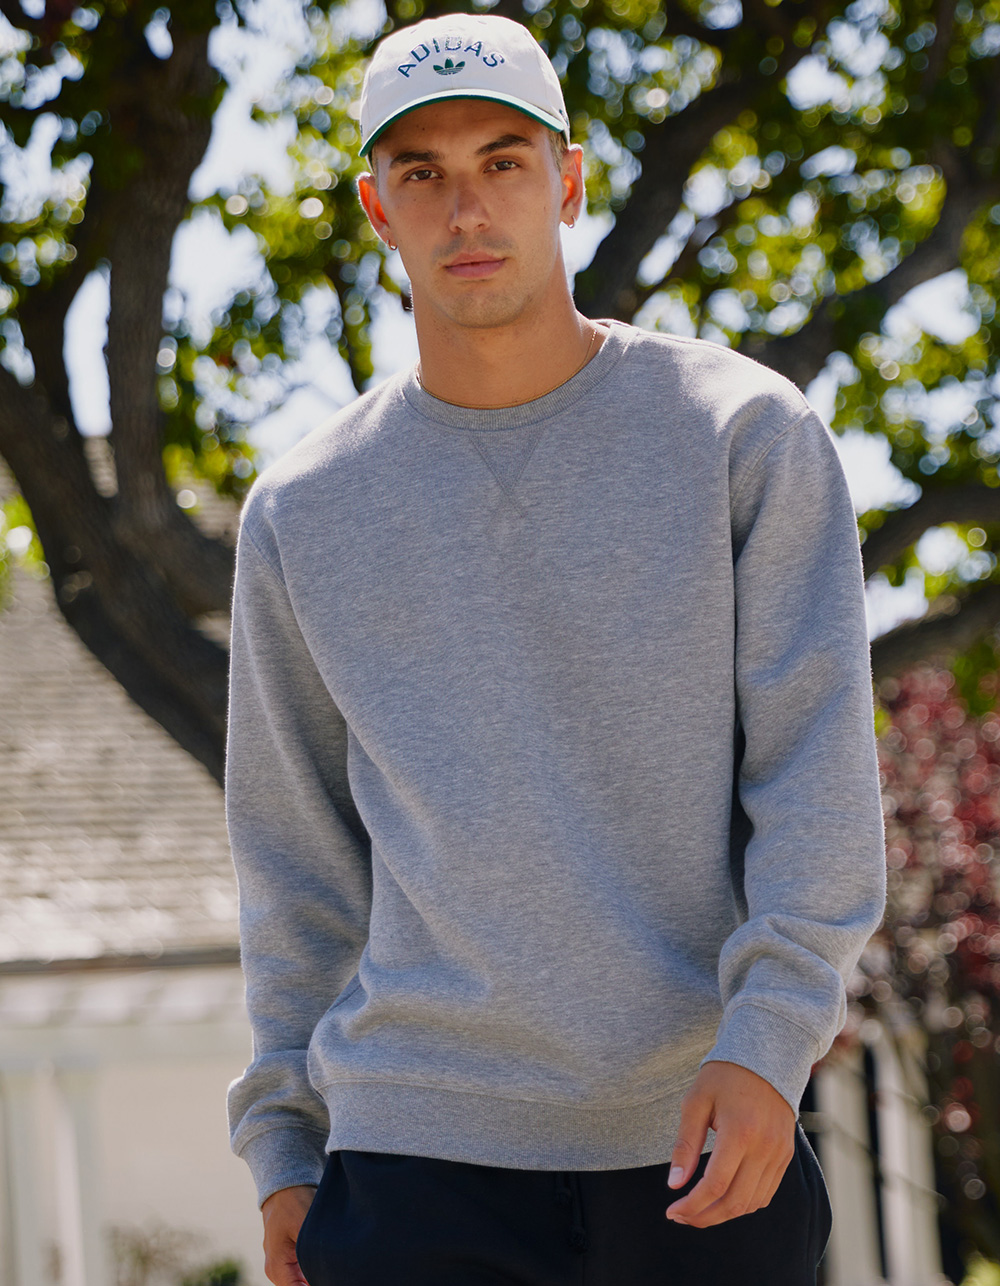 Men's Grey Fleece Sweatshirts & Hoodies